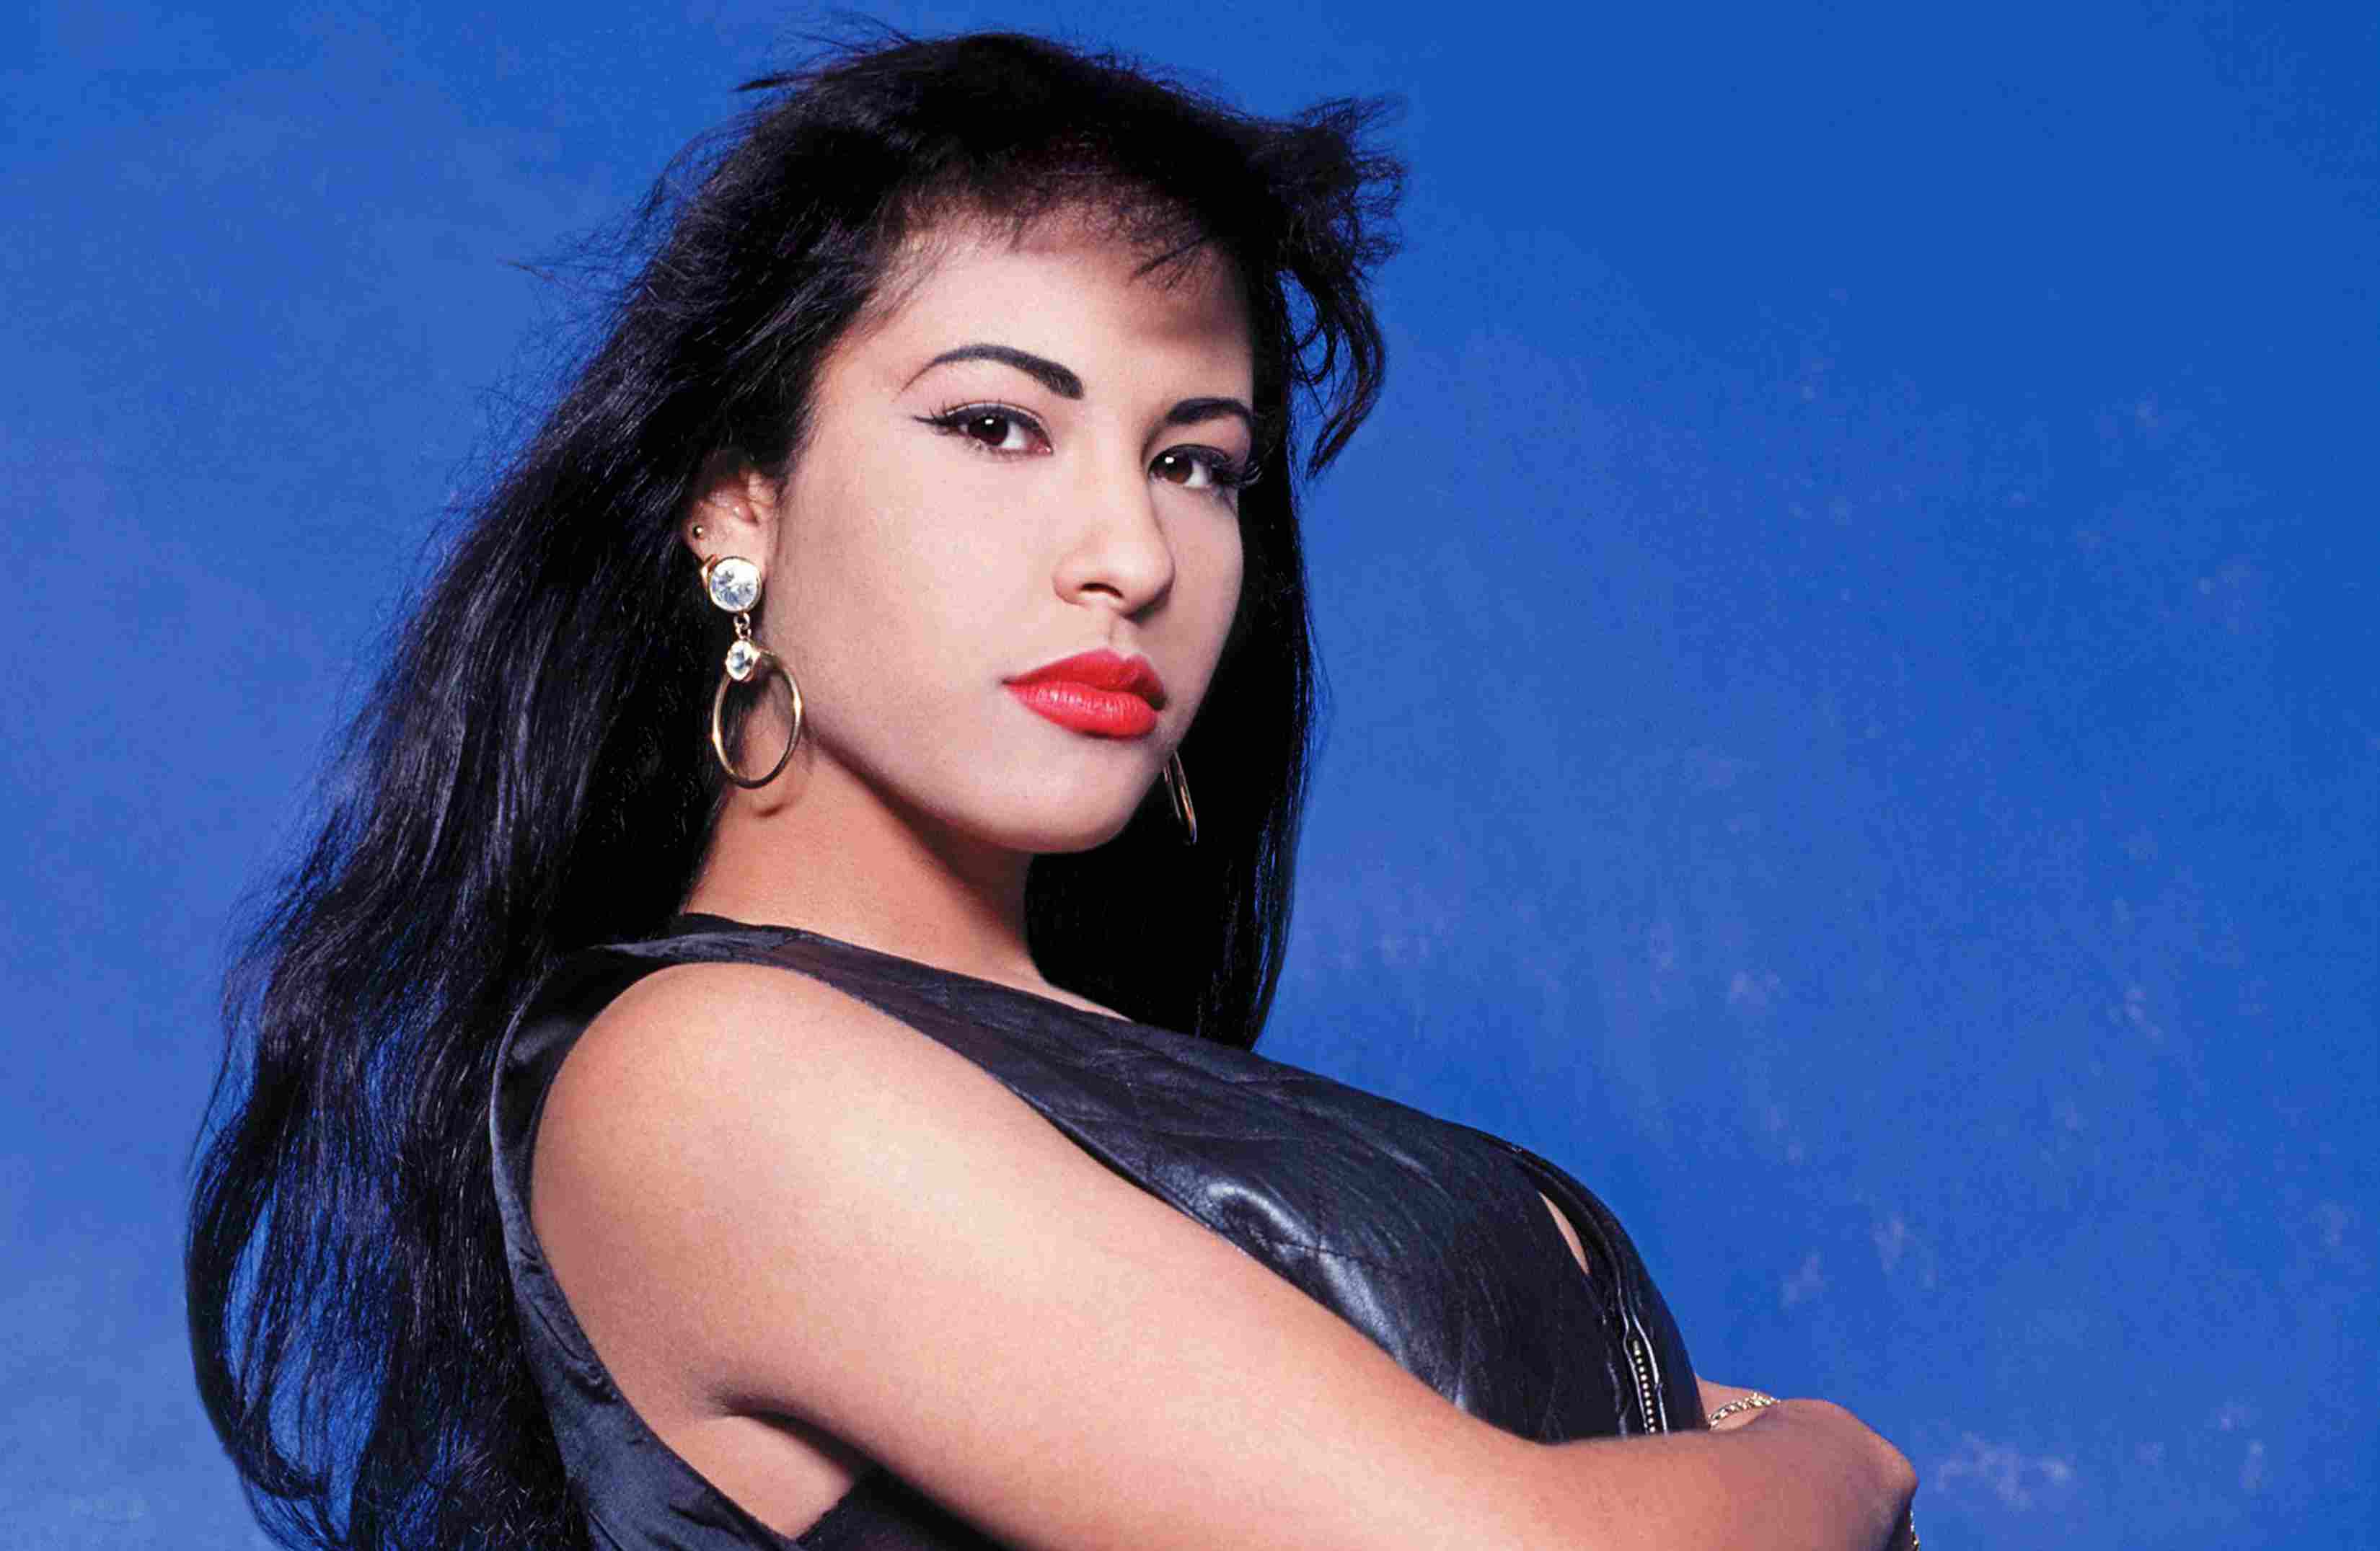 La cadena televisiva ABC sería transmisora en Estados Unidos de la nueva adaptación que narra la vida y carrera artística de la cantante texana que fue asesinada en 1995